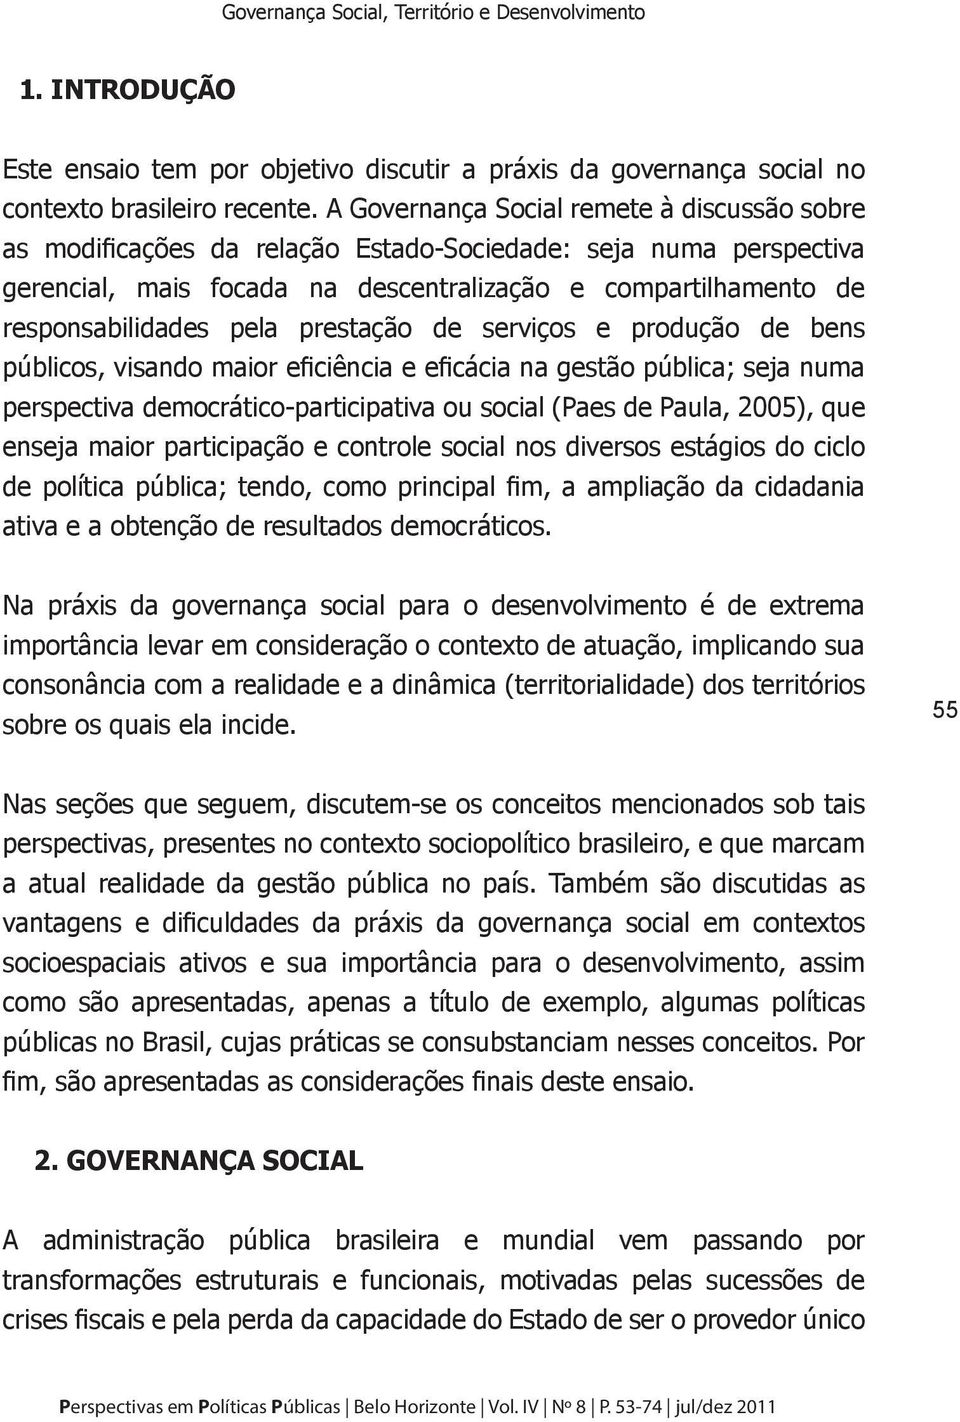 prestação de serviços e produção de bens públicos, visando maior eficiência e eficácia na gestão pública; seja numa perspectiva democrático-participativa ou social (Paes de Paula, 2005), que enseja